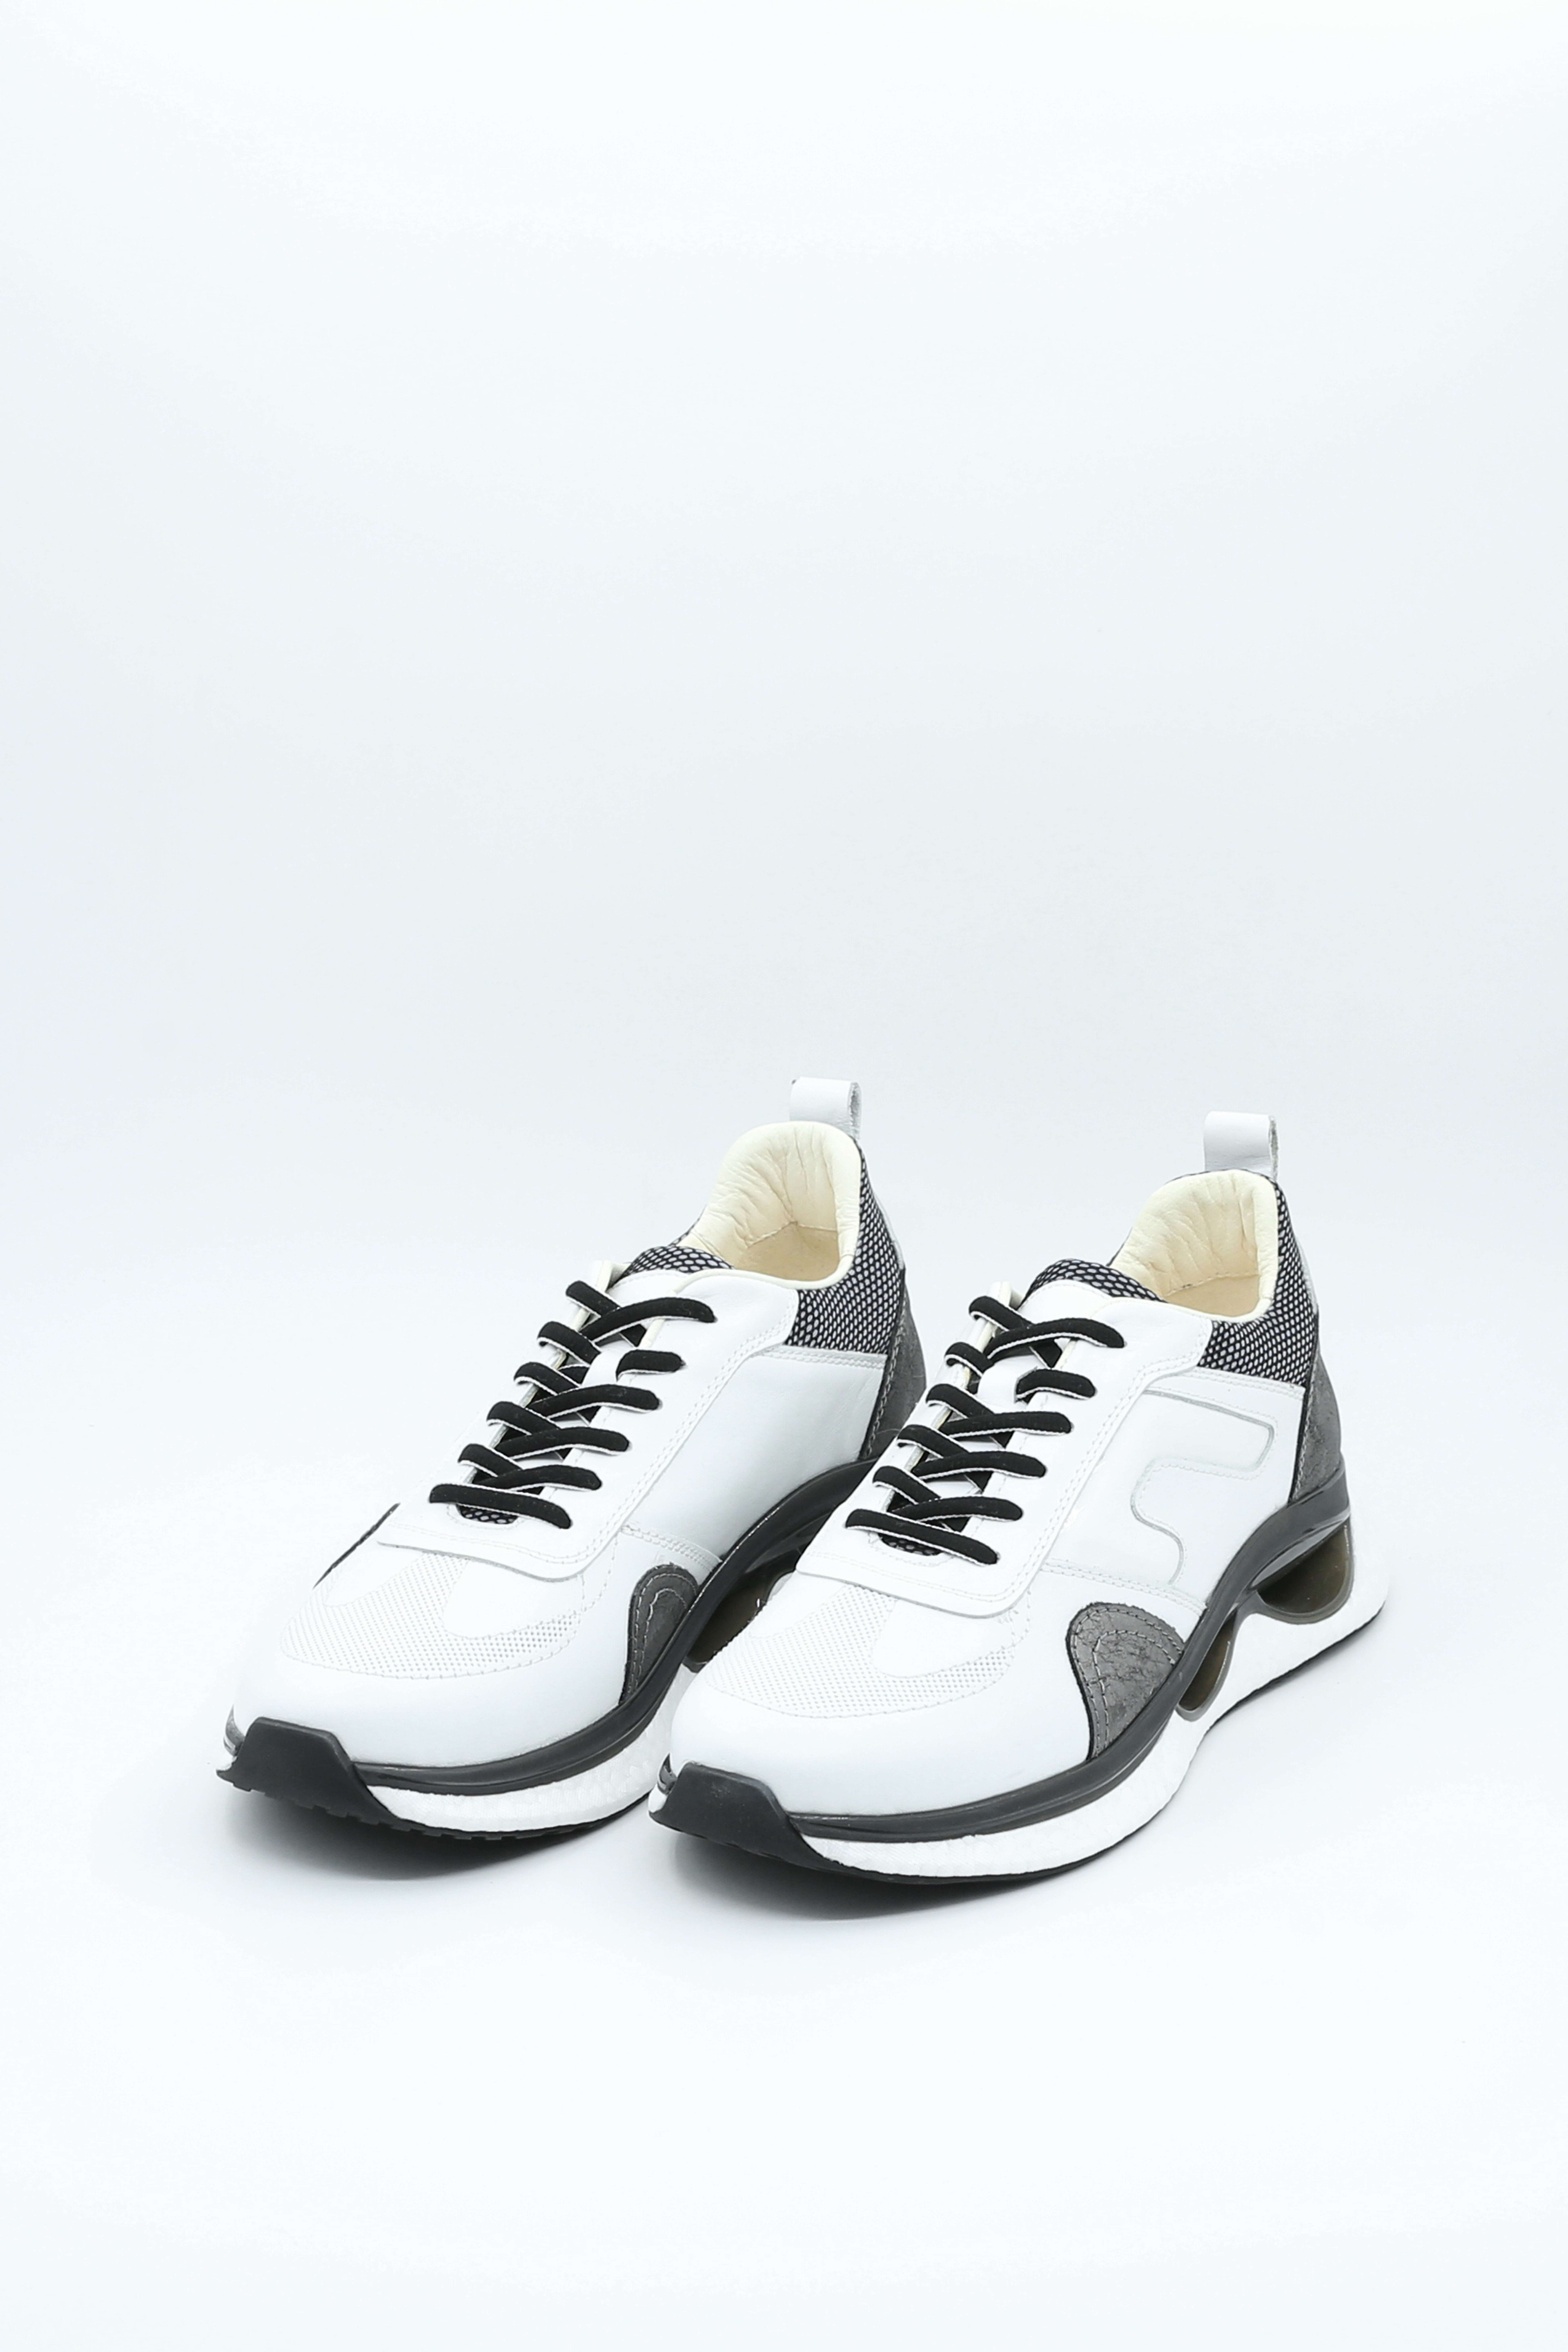 TANNERY+ H64 Beyaz Gümüş Detaylı Premium Spor Ayakkabı